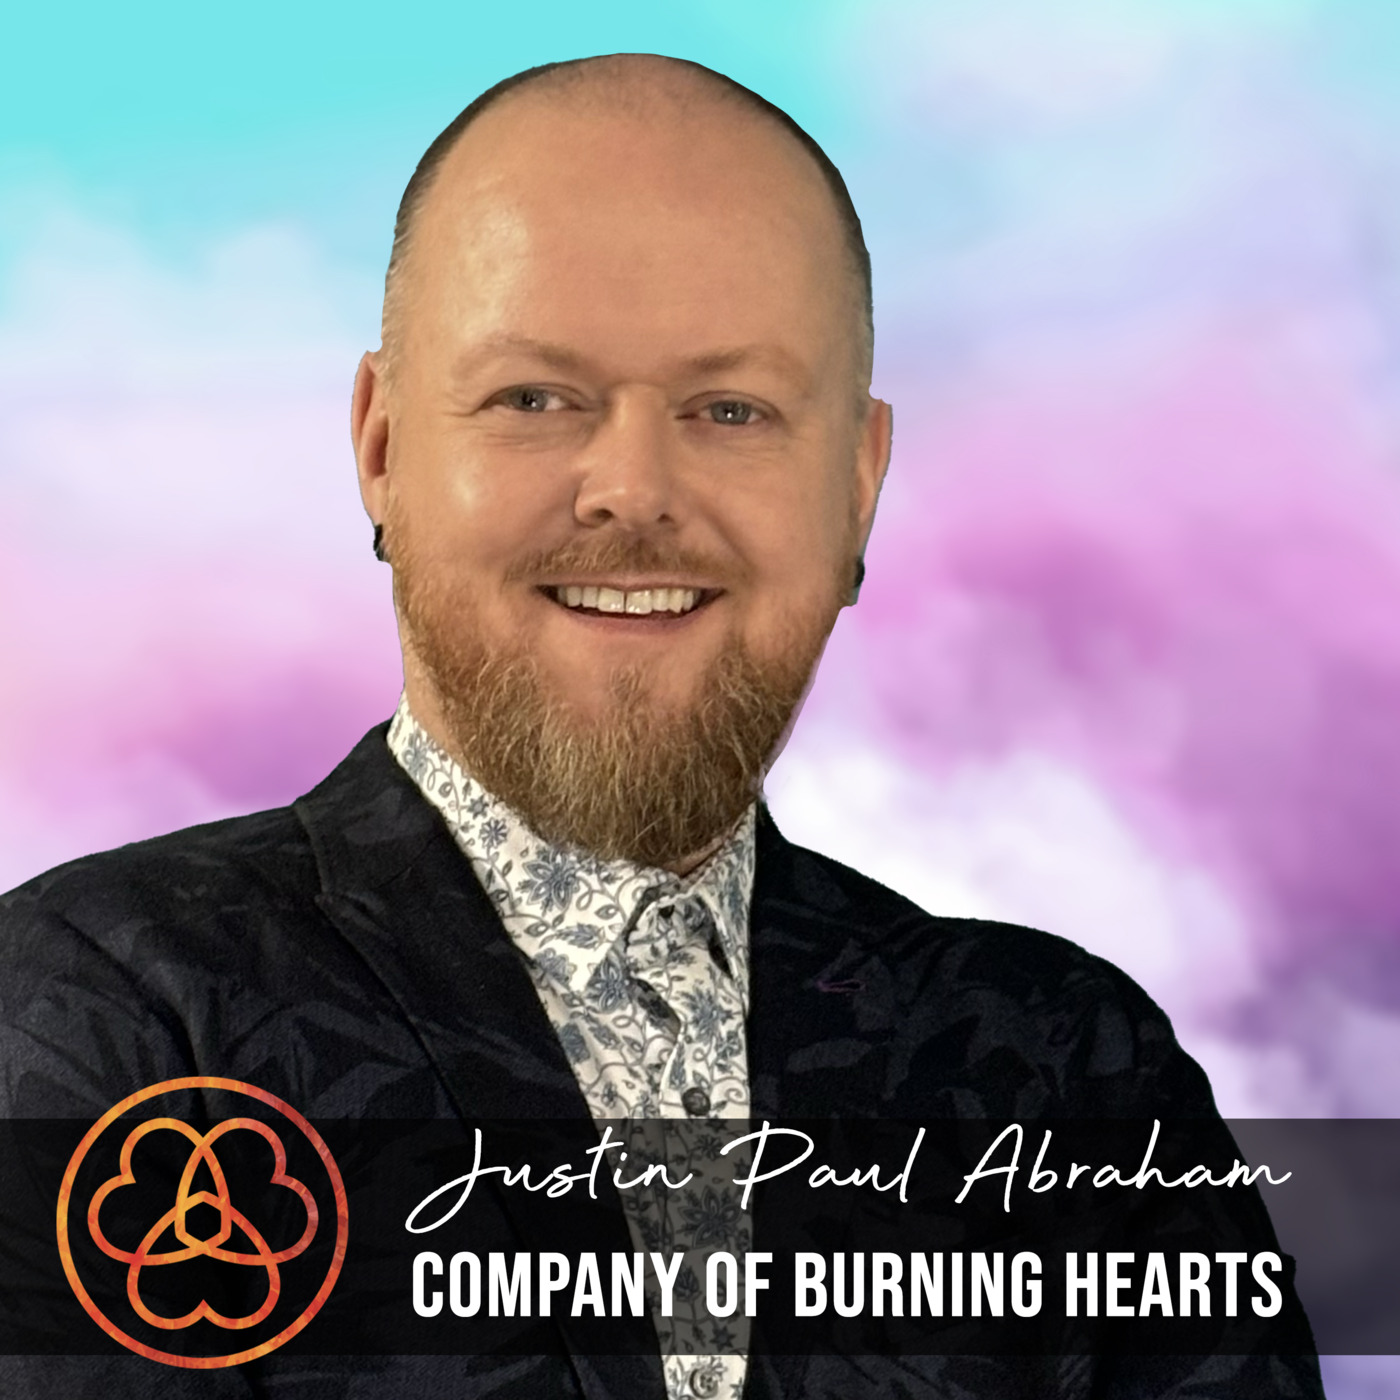 Company of Burning Hearts